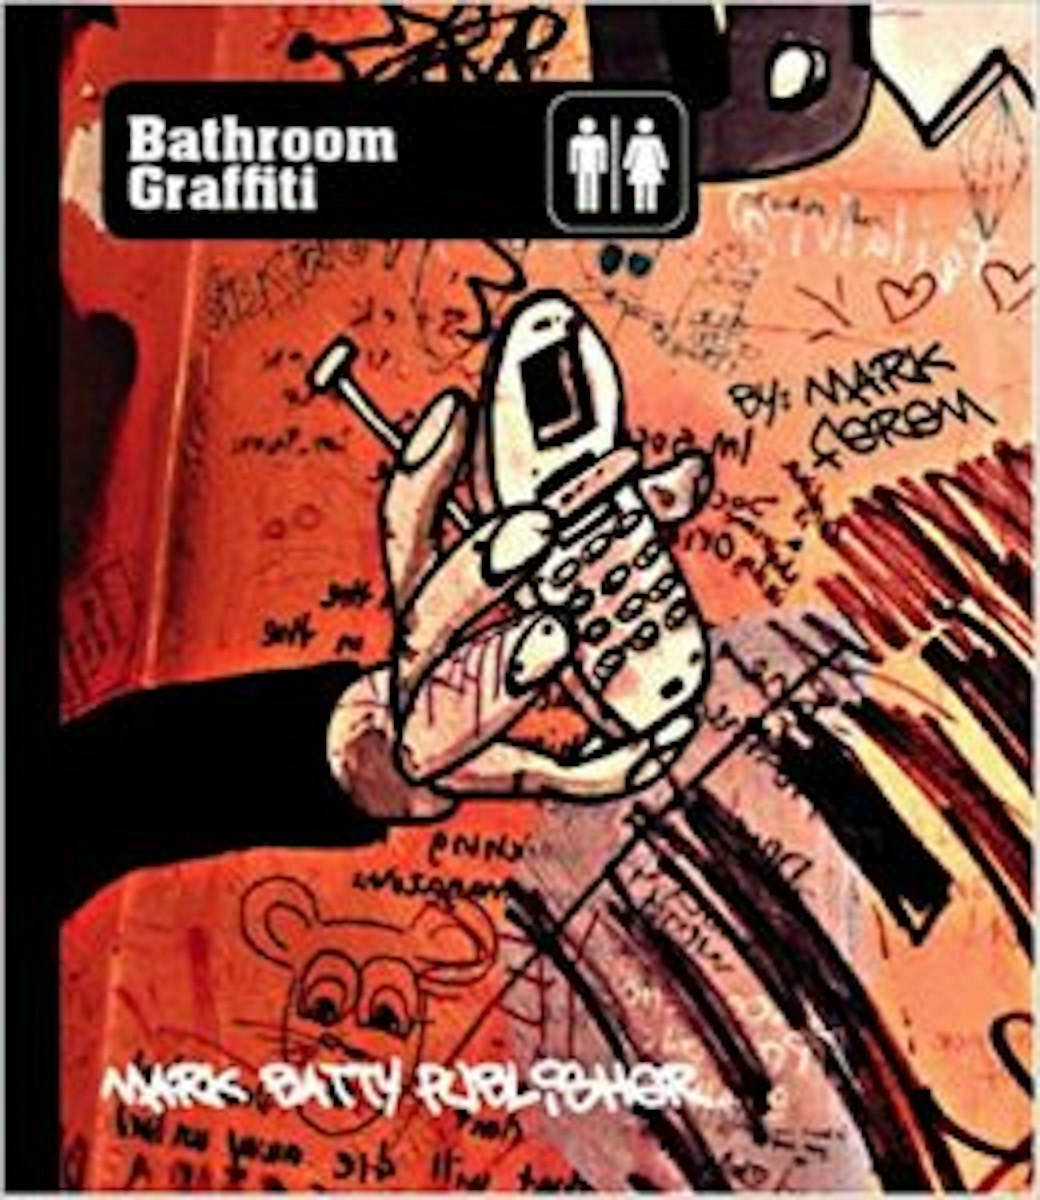 Bathroom Graffiti cover